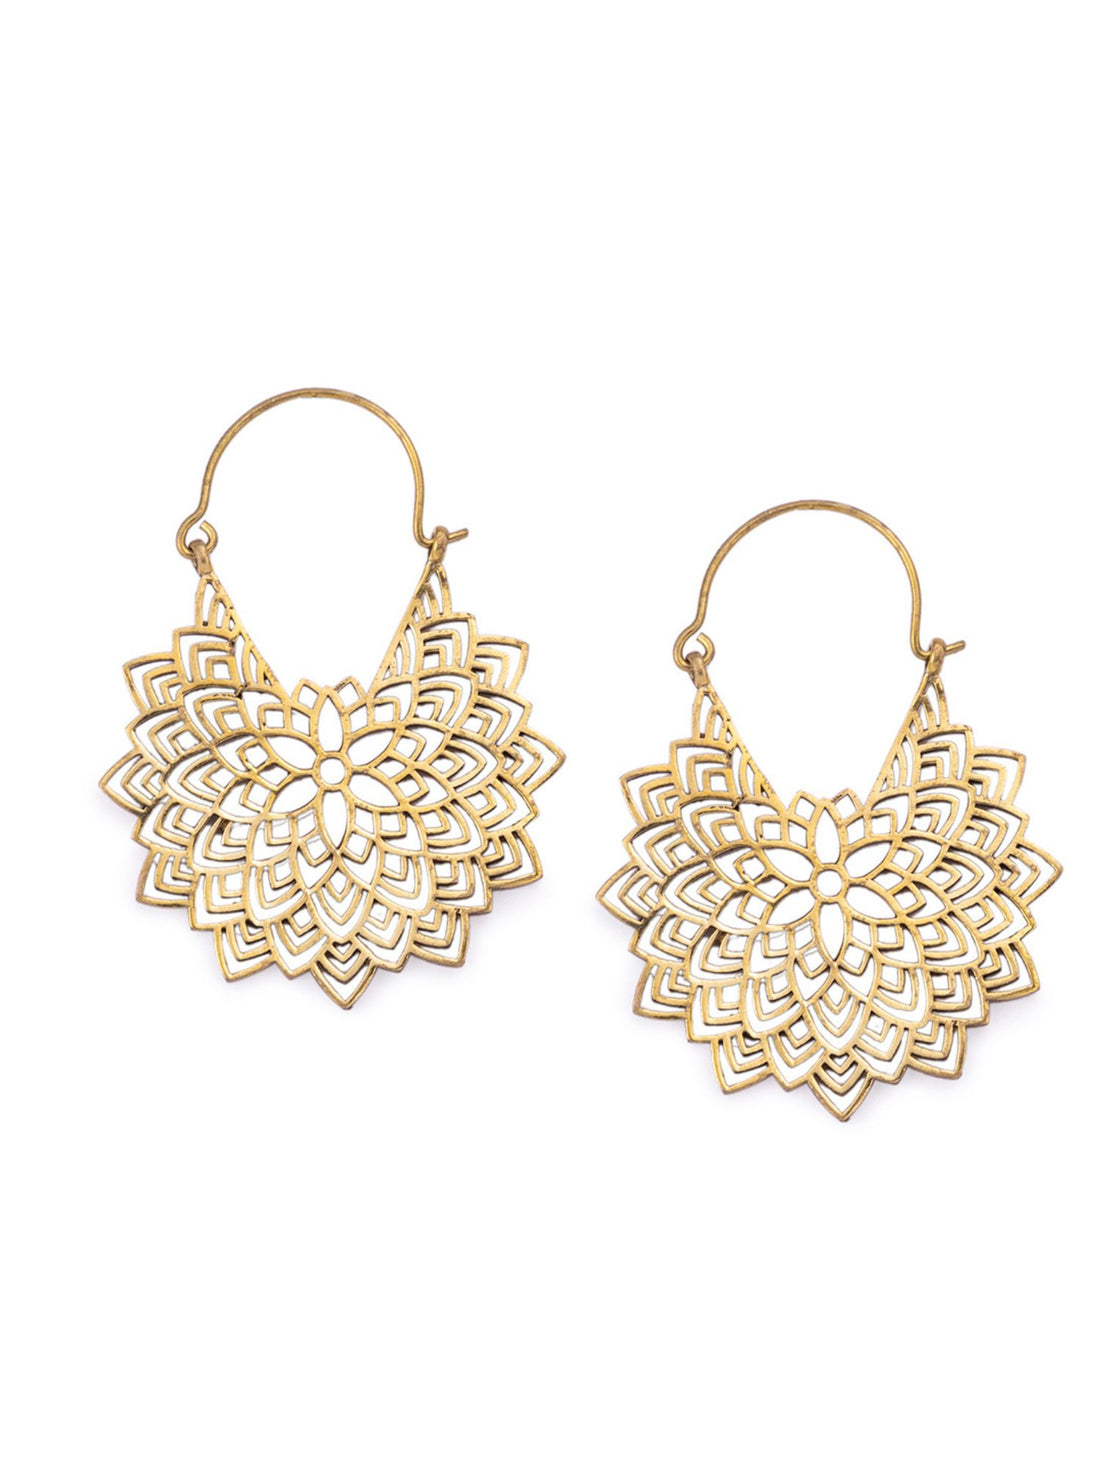 Party Wear Chandbaalis Earrings - Statement Gold-Plated Brass Earrings By Studio One Love